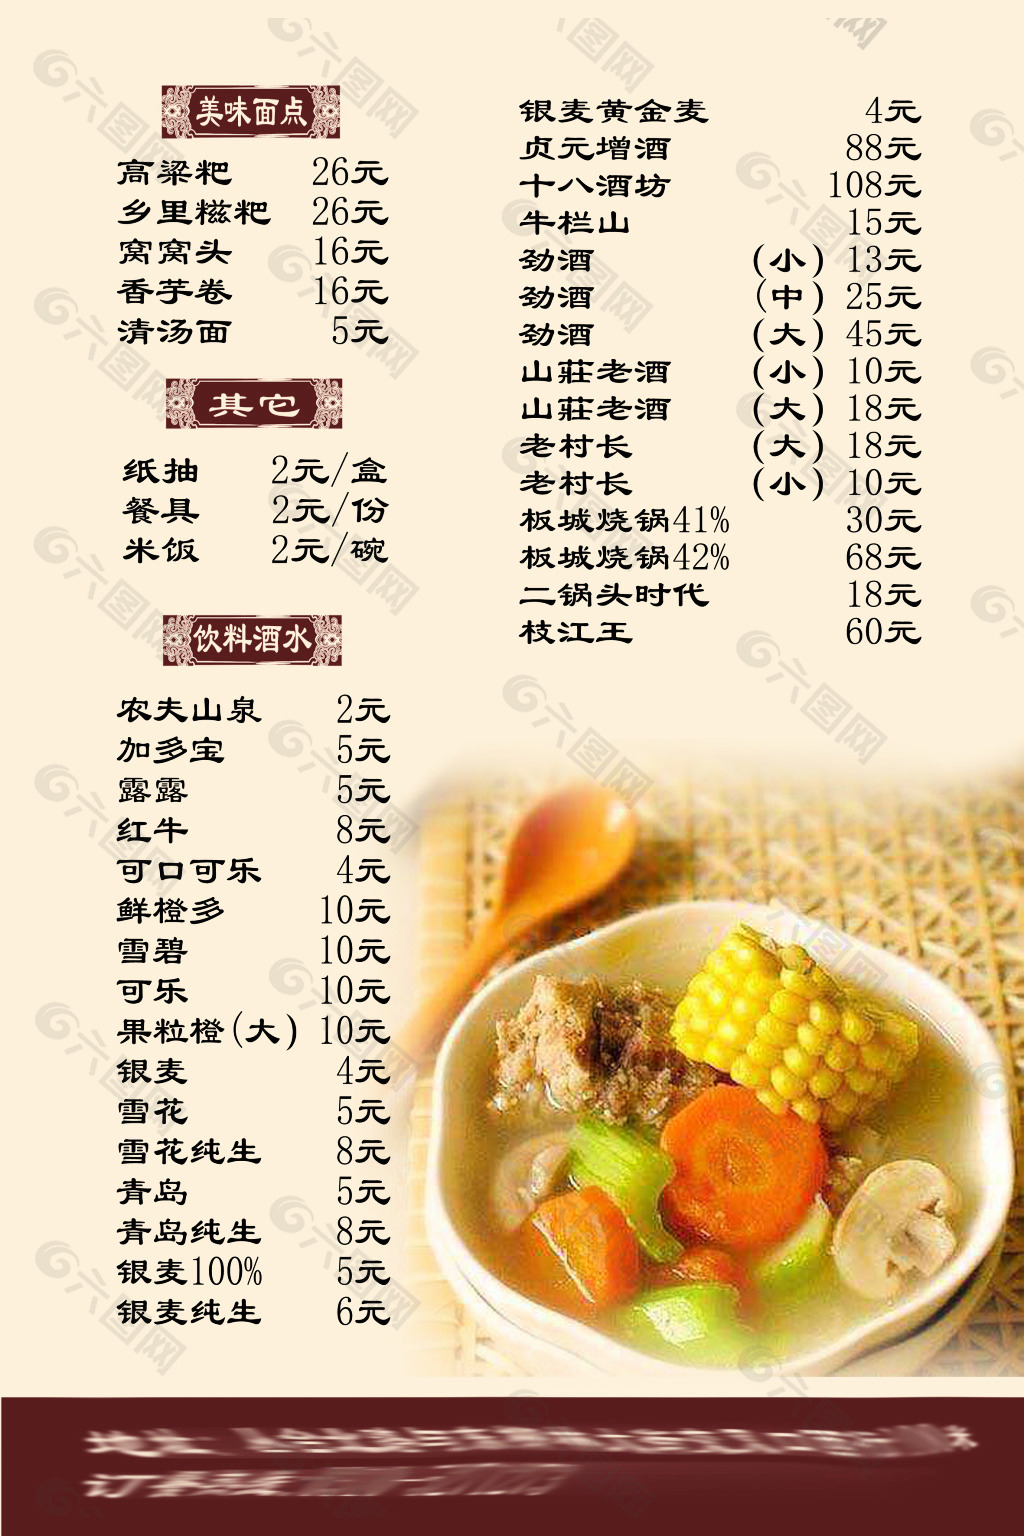 潇湘食府 菜单